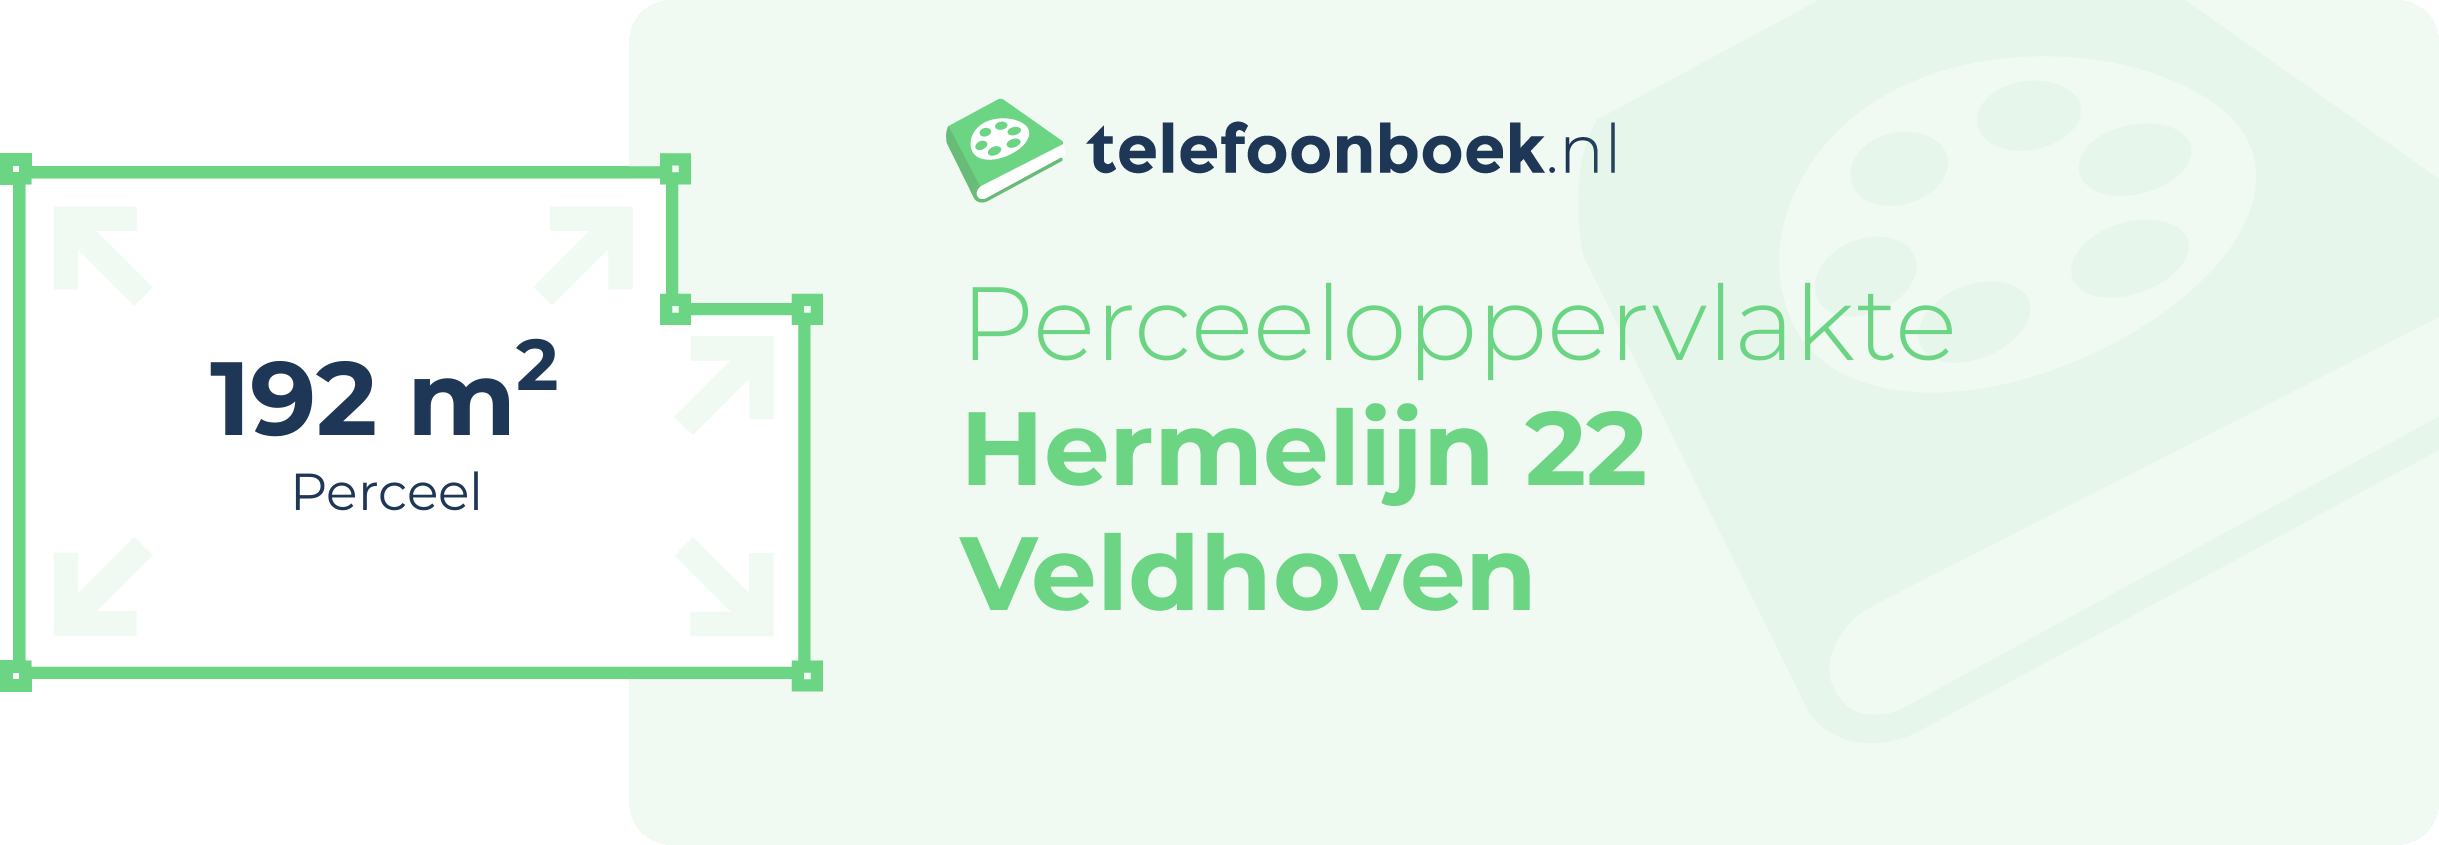 Perceeloppervlakte Hermelijn 22 Veldhoven